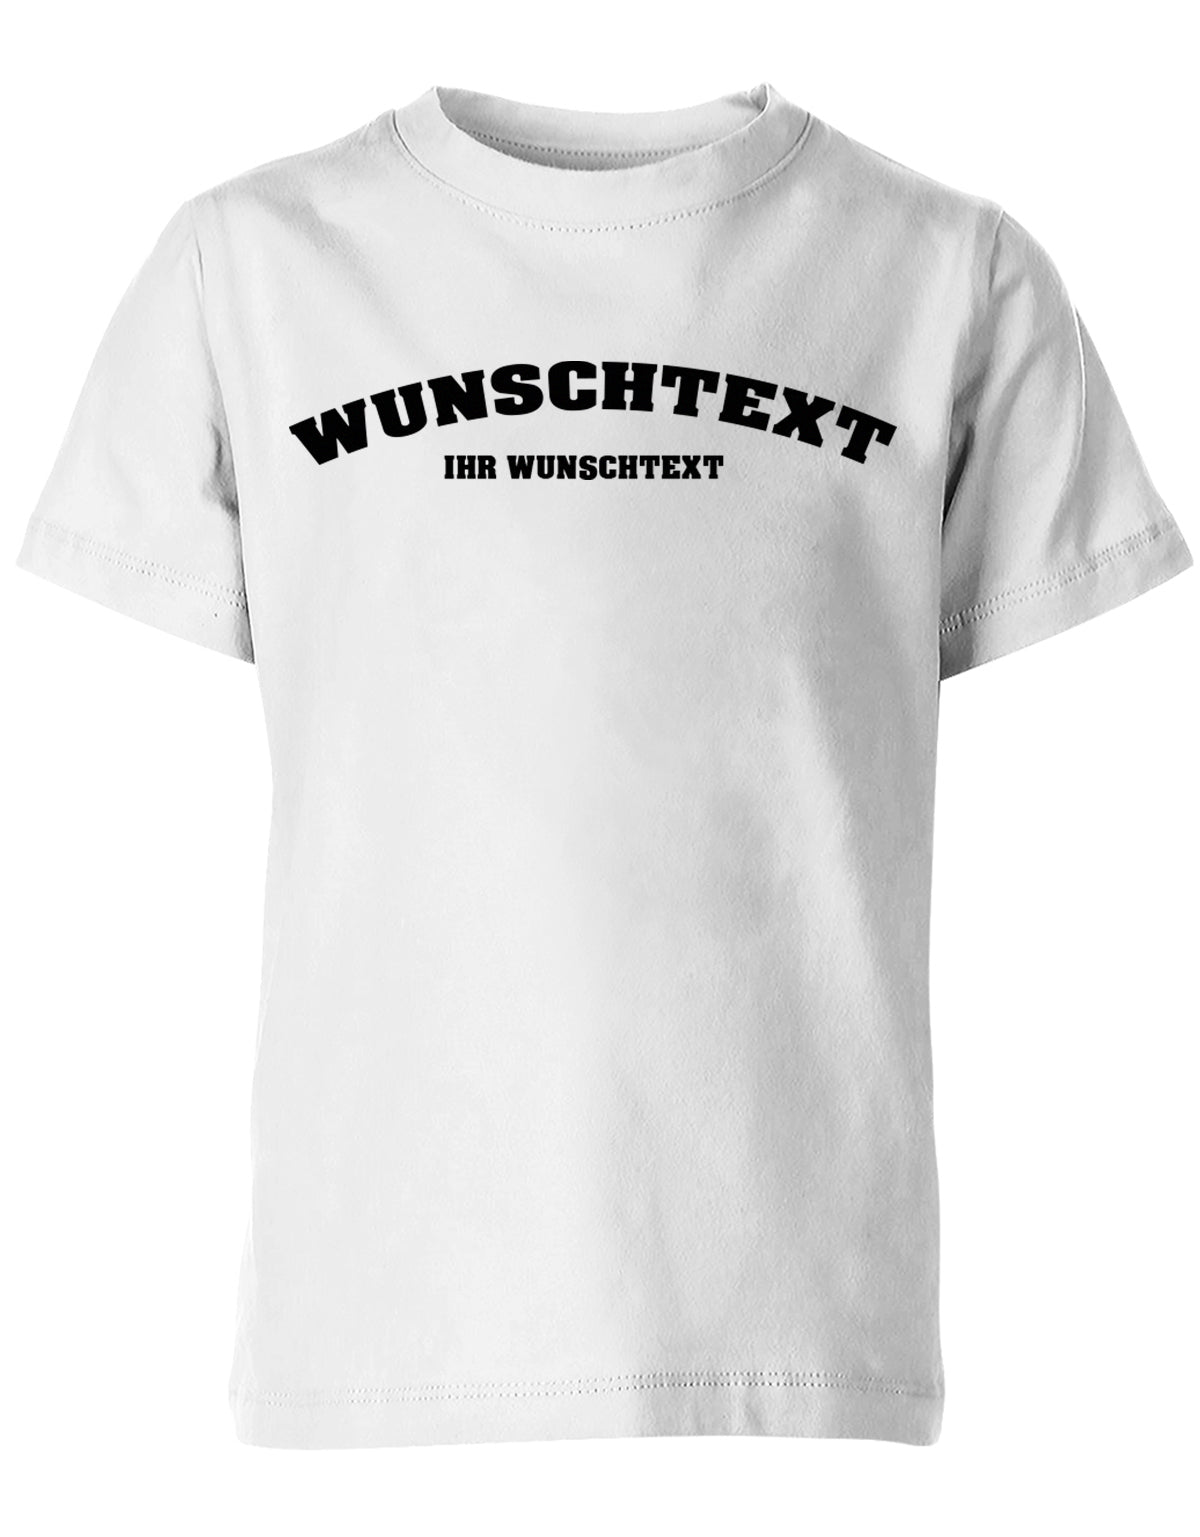 Kinder Tshirt mit Wunschtext.  Abgerundeter Text im Collage-Style. Weiss